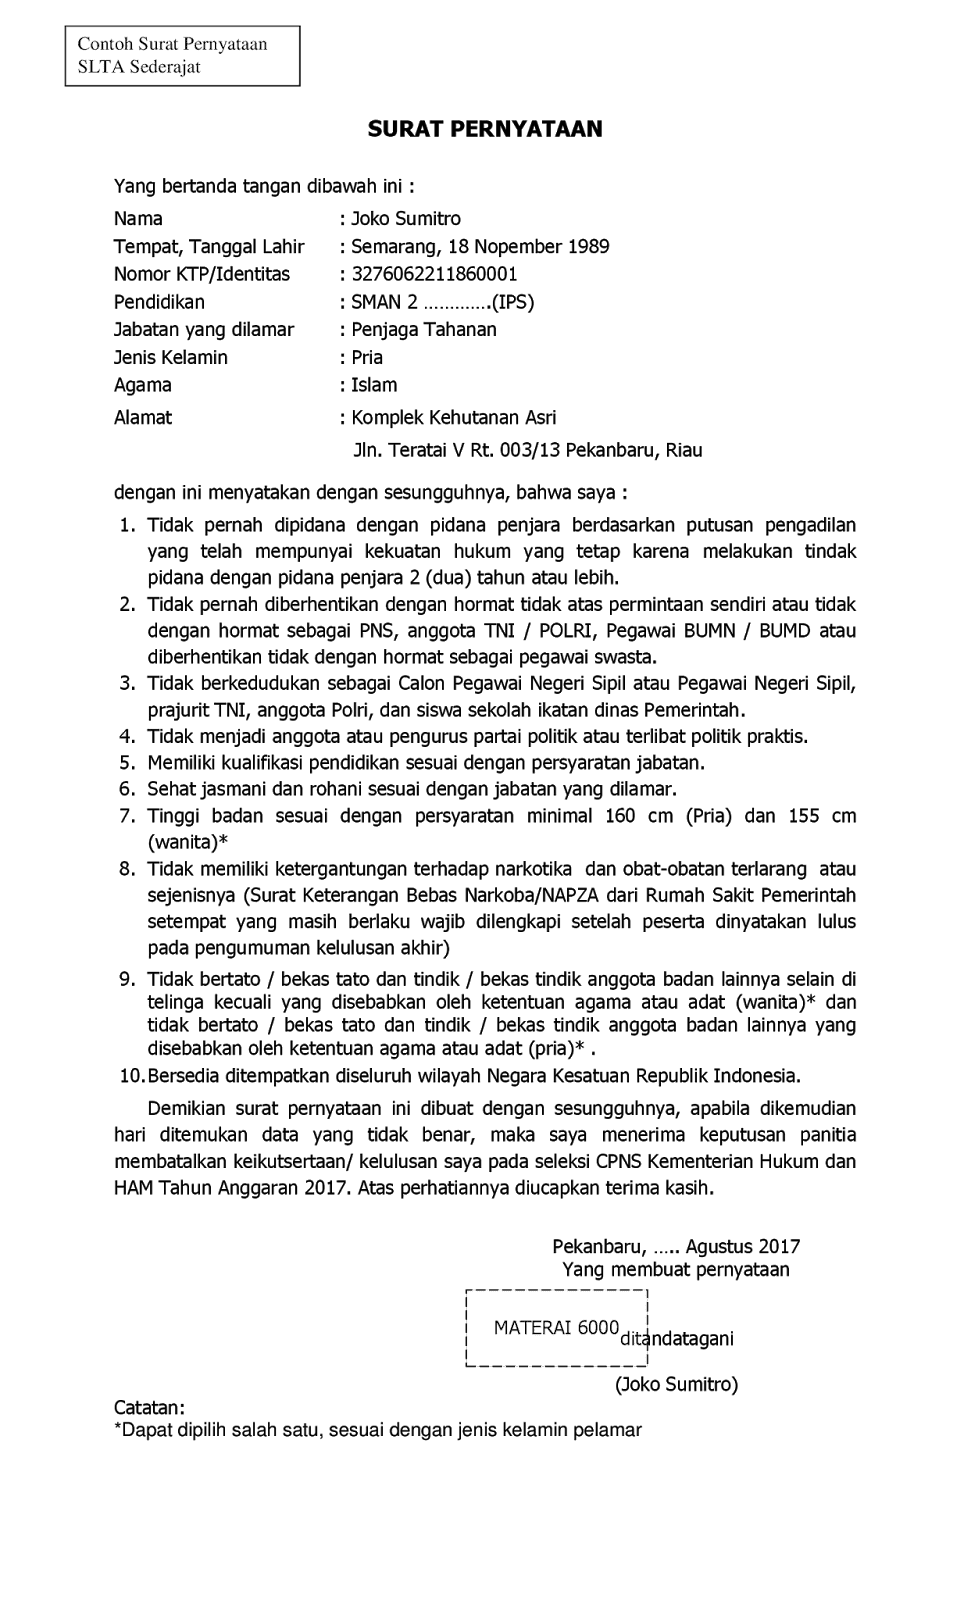 Contoh Surat Lamaran Cpns.2017 Kementrian Hukun Dan Ham